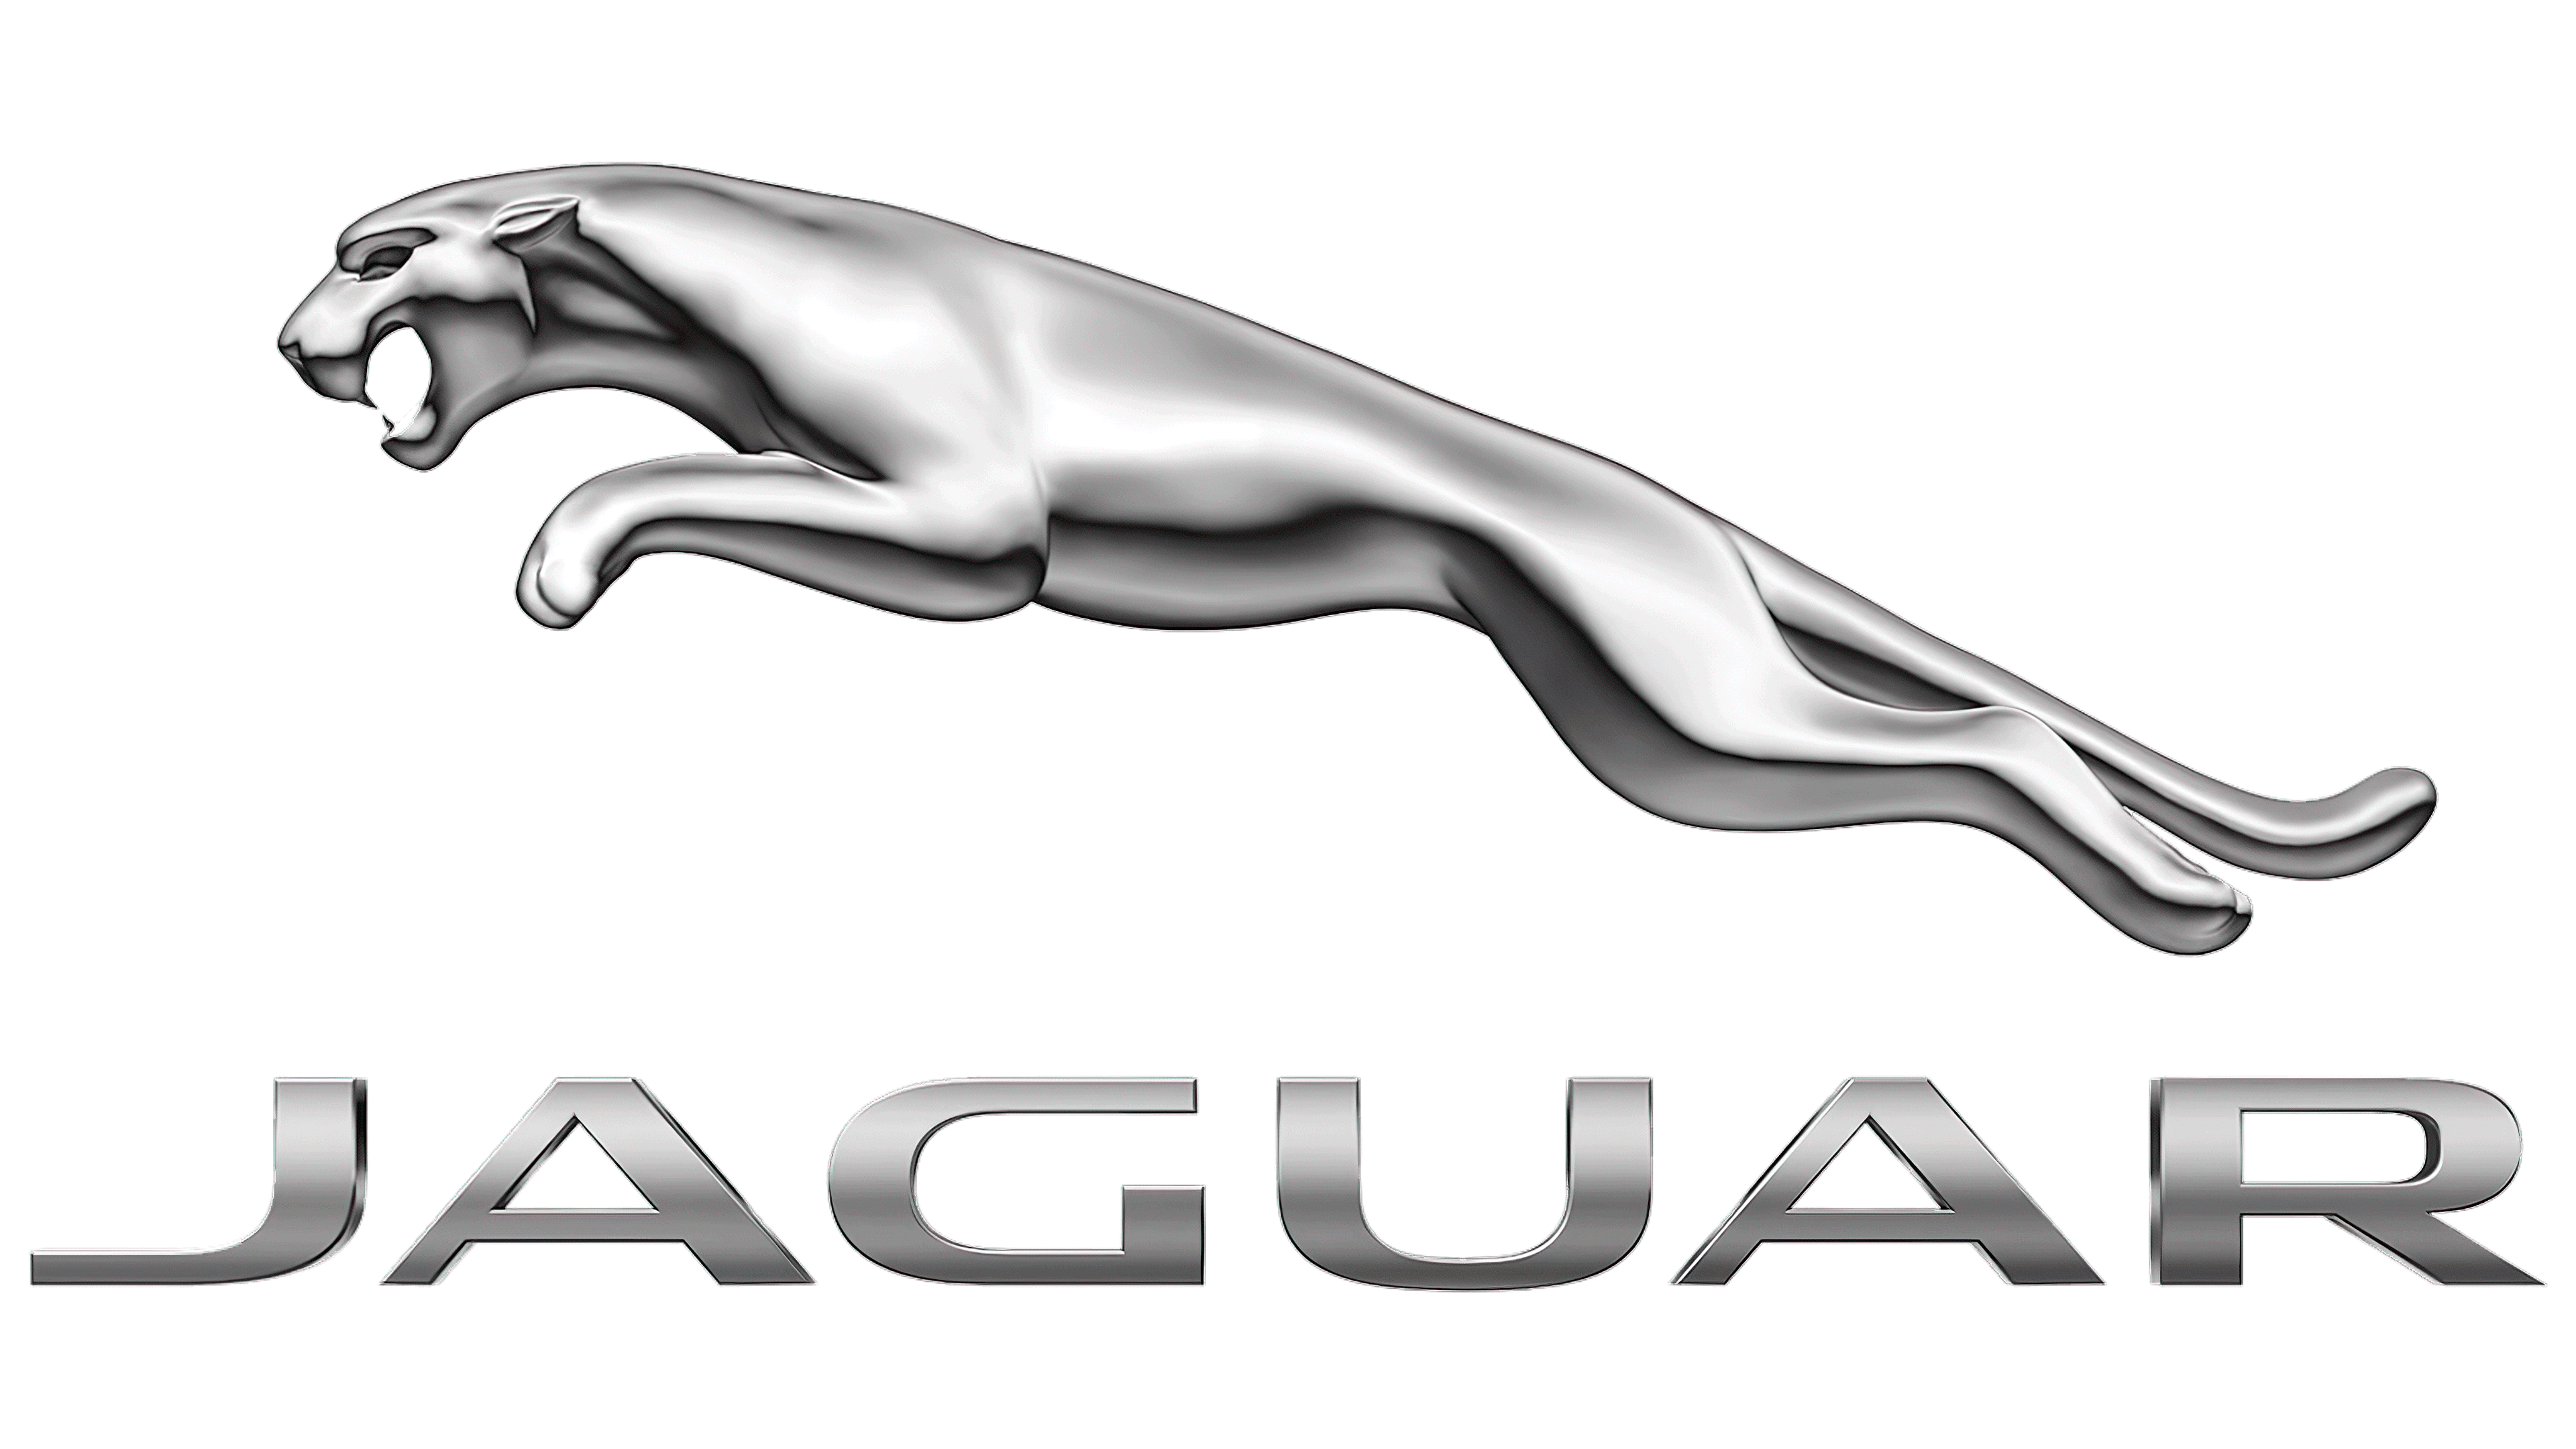 Jaguar Logo, symbol, meaning, history, PNG